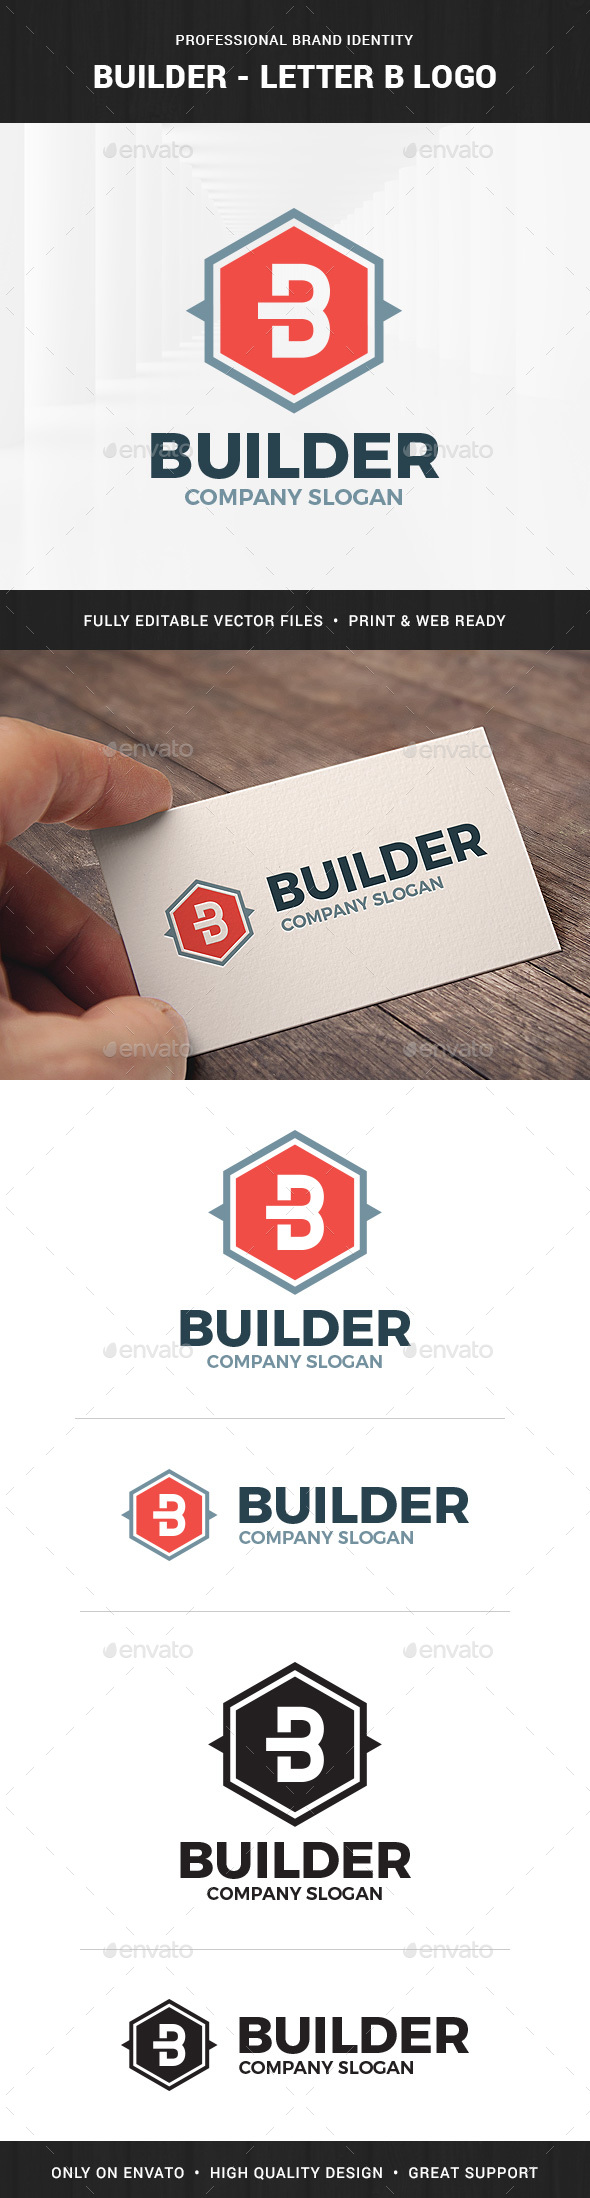 Builder - Letter B Logo